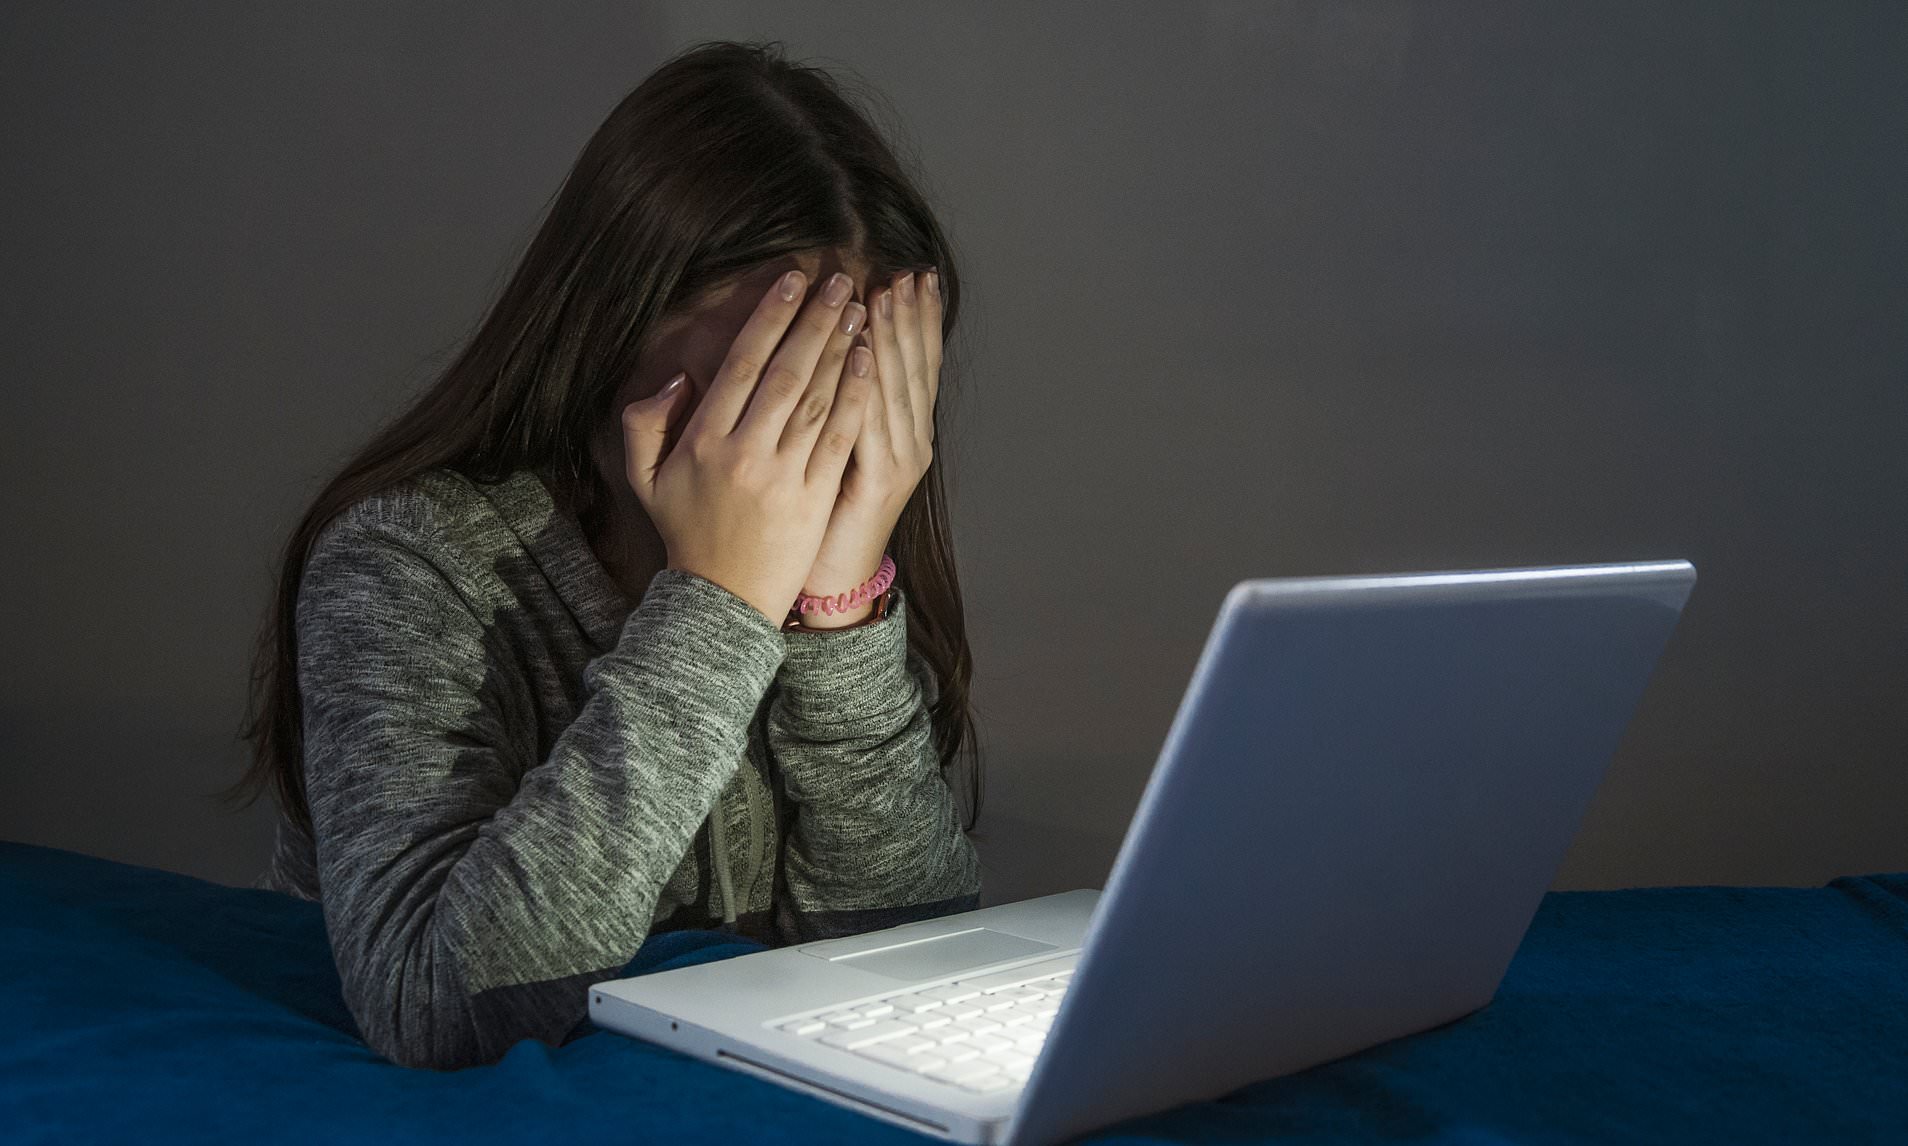 Imagem do Artigo: Pesquisa aponta que estudantes de escolas privadas estão mais vulneráveis ao cyberbullying